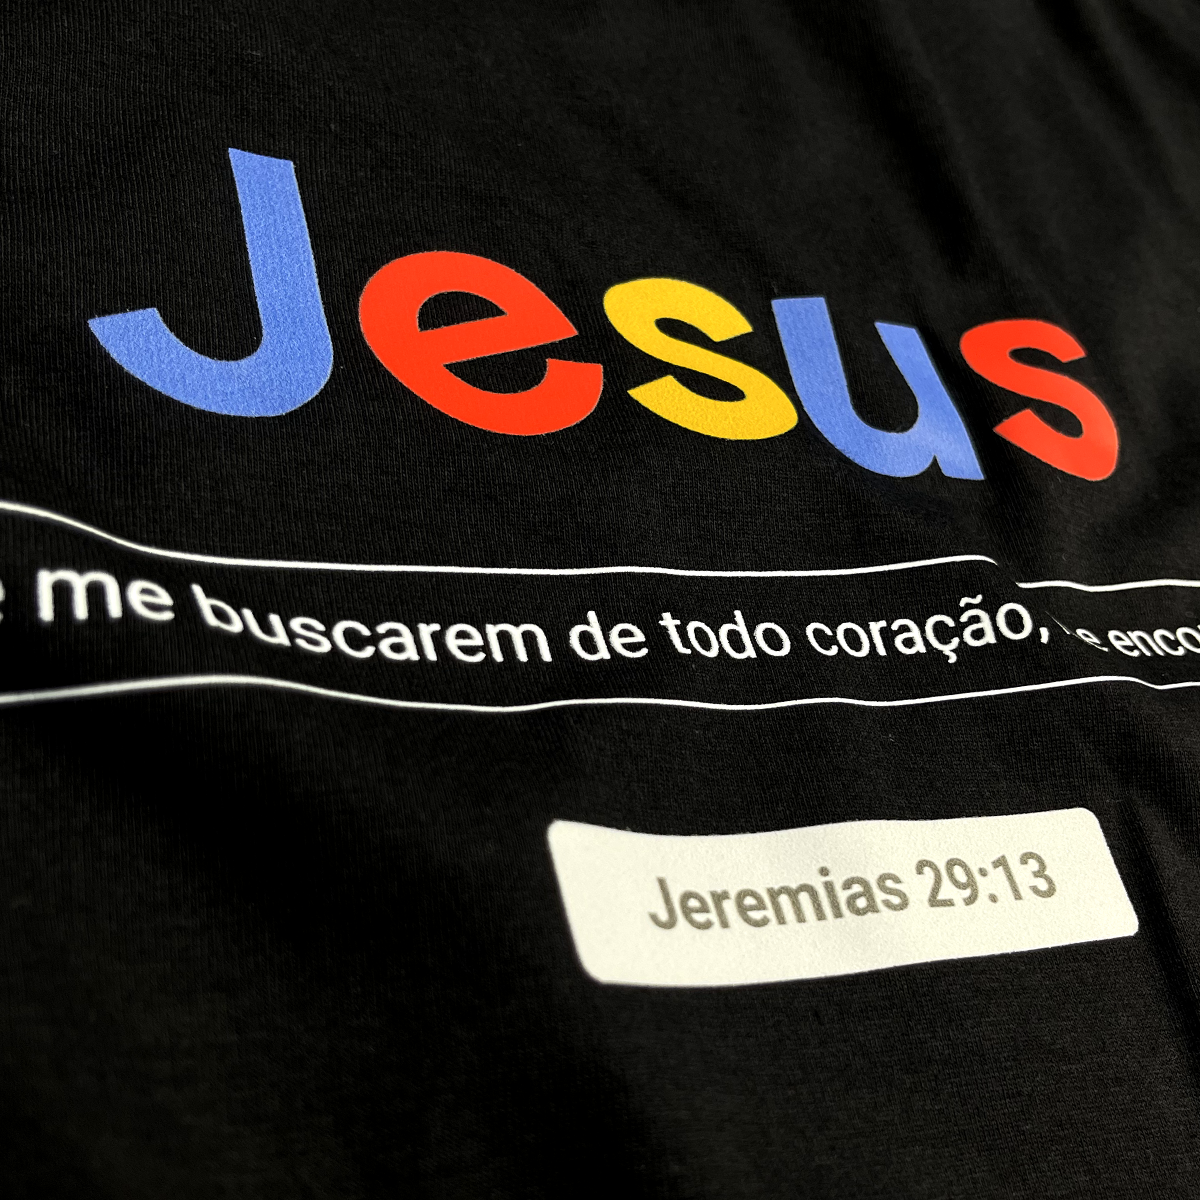 Camiseta Feminina Preta Jesus Se me buscarem de todo coração, me encontrarão